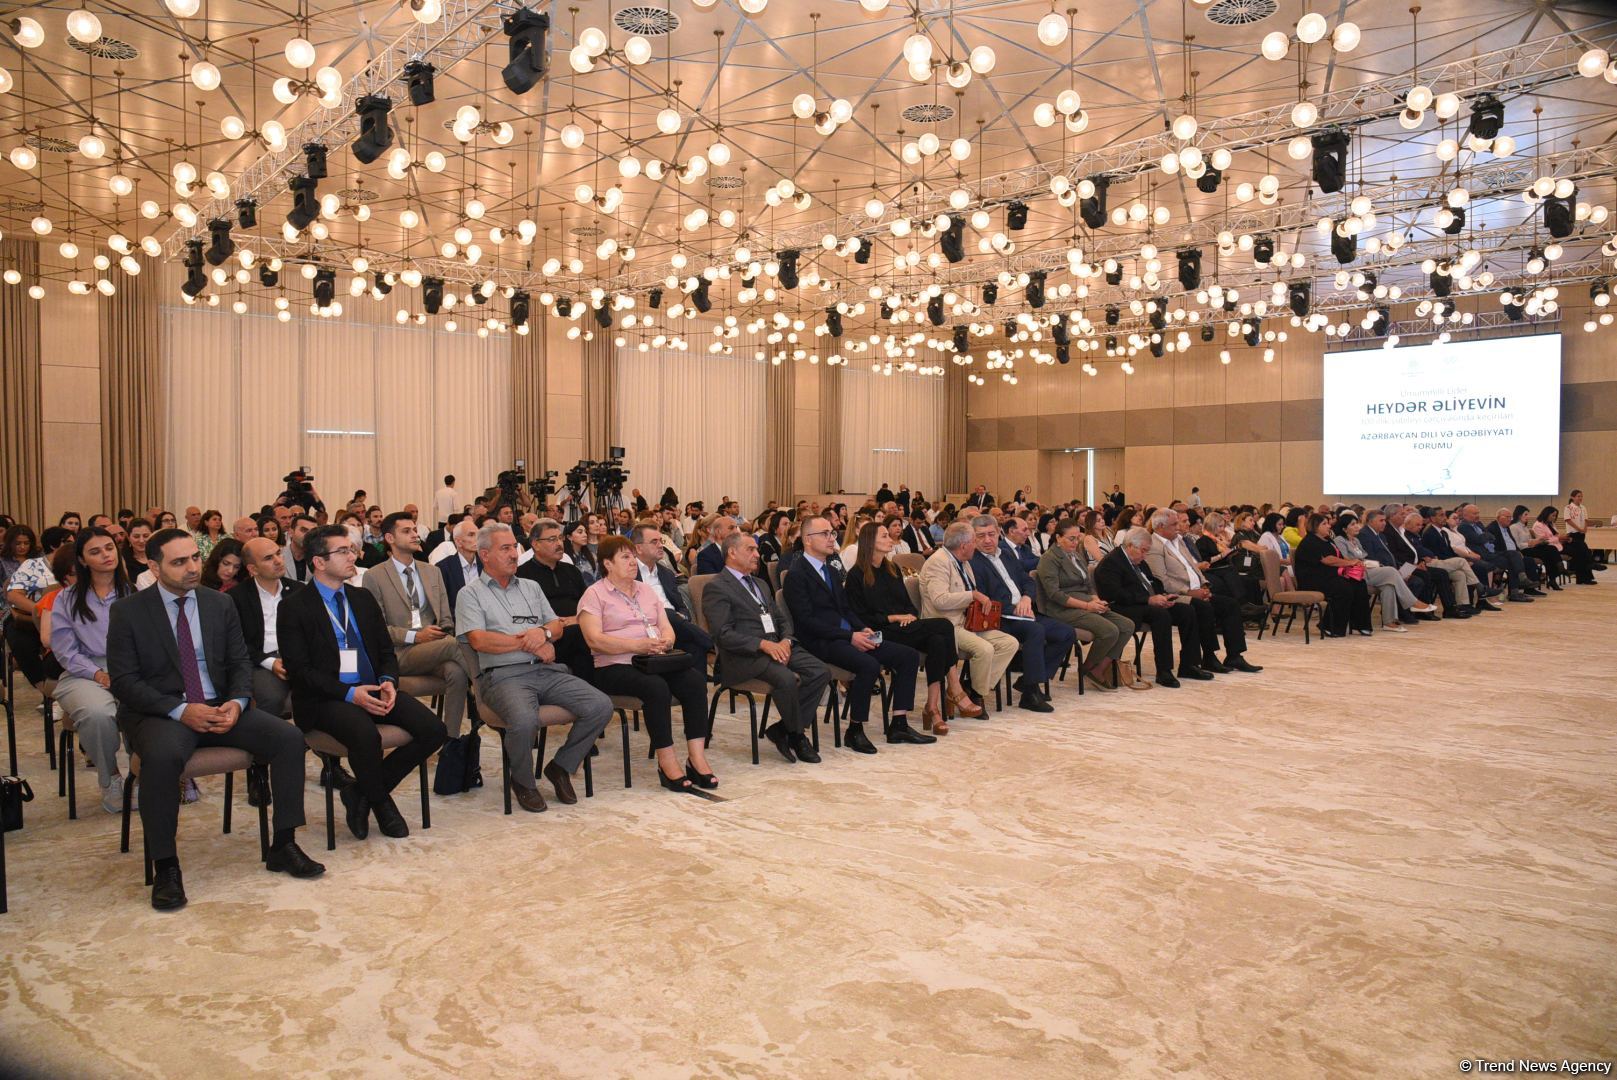 Форум азербайджанского языка и литературы. Какие темы обсуждались во второй день? (ФОТО)